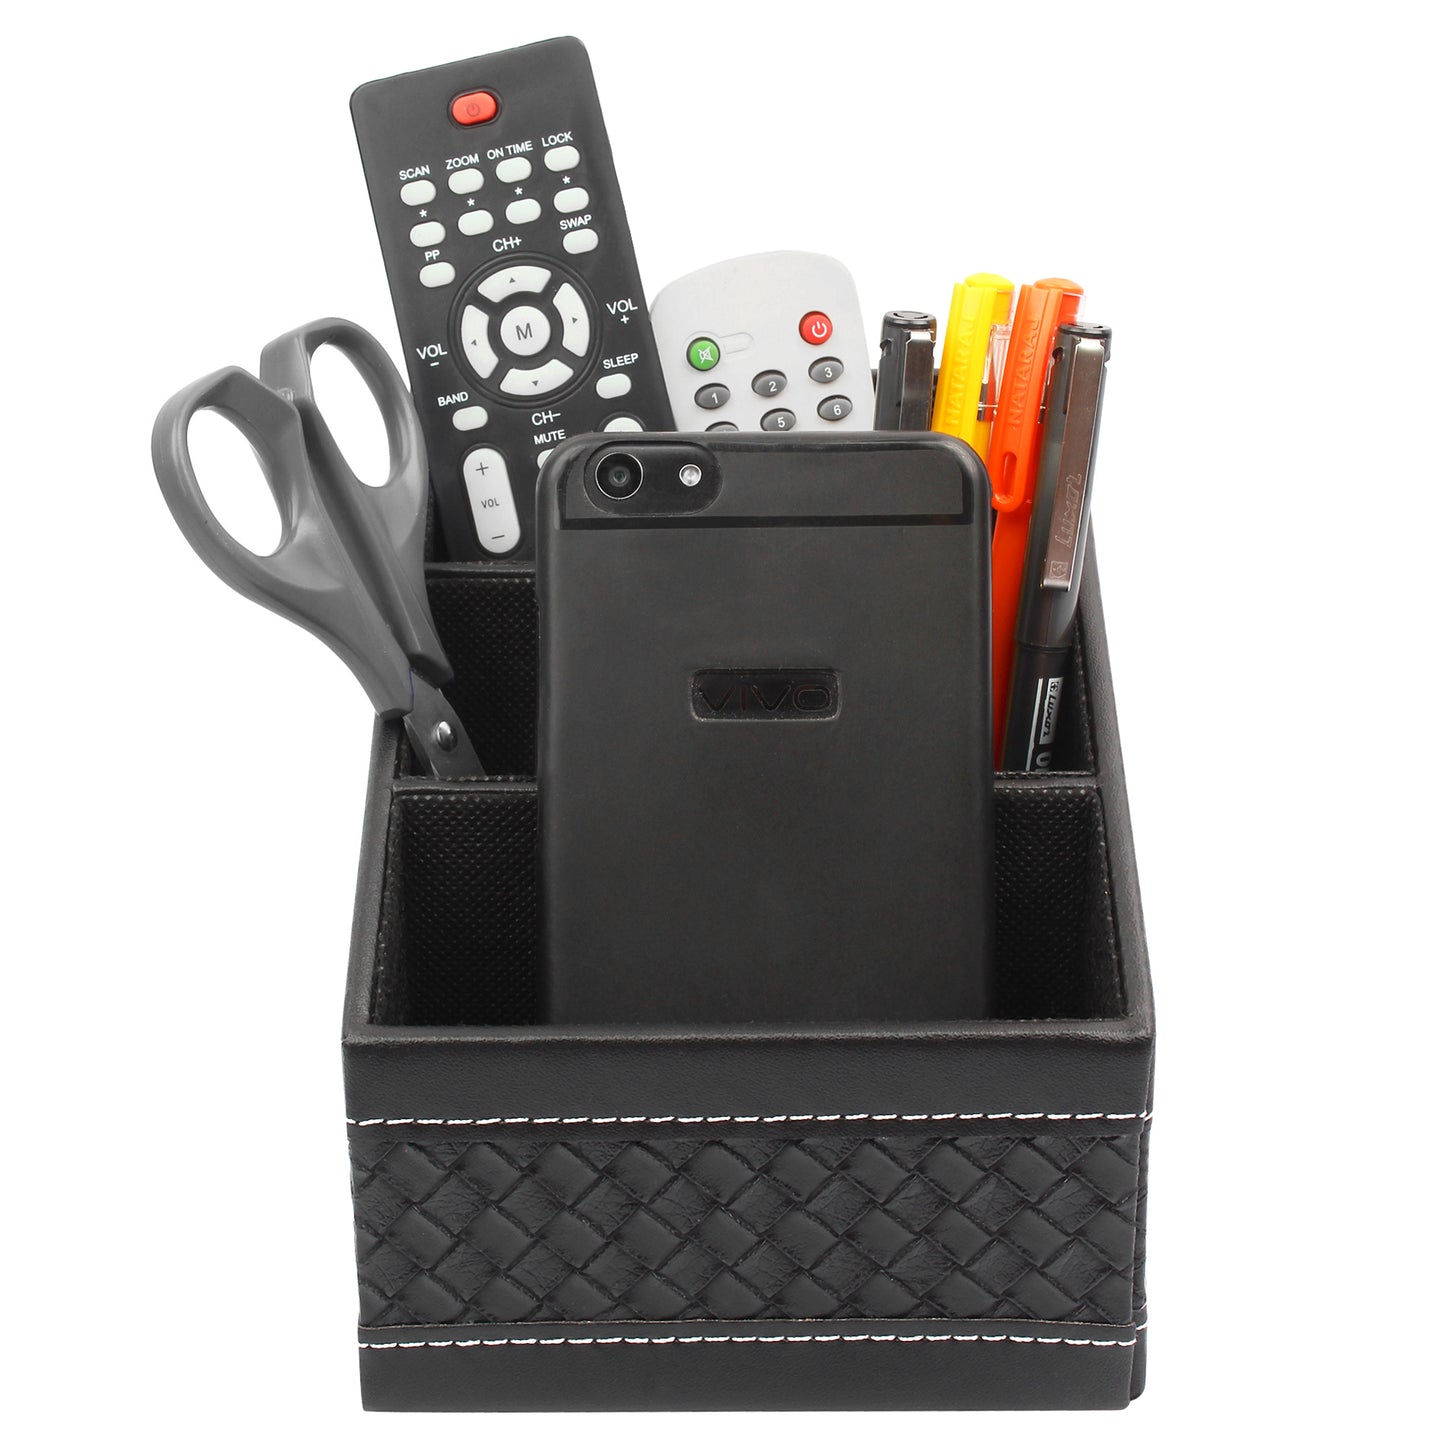 Desk Organizer / Remote Holder